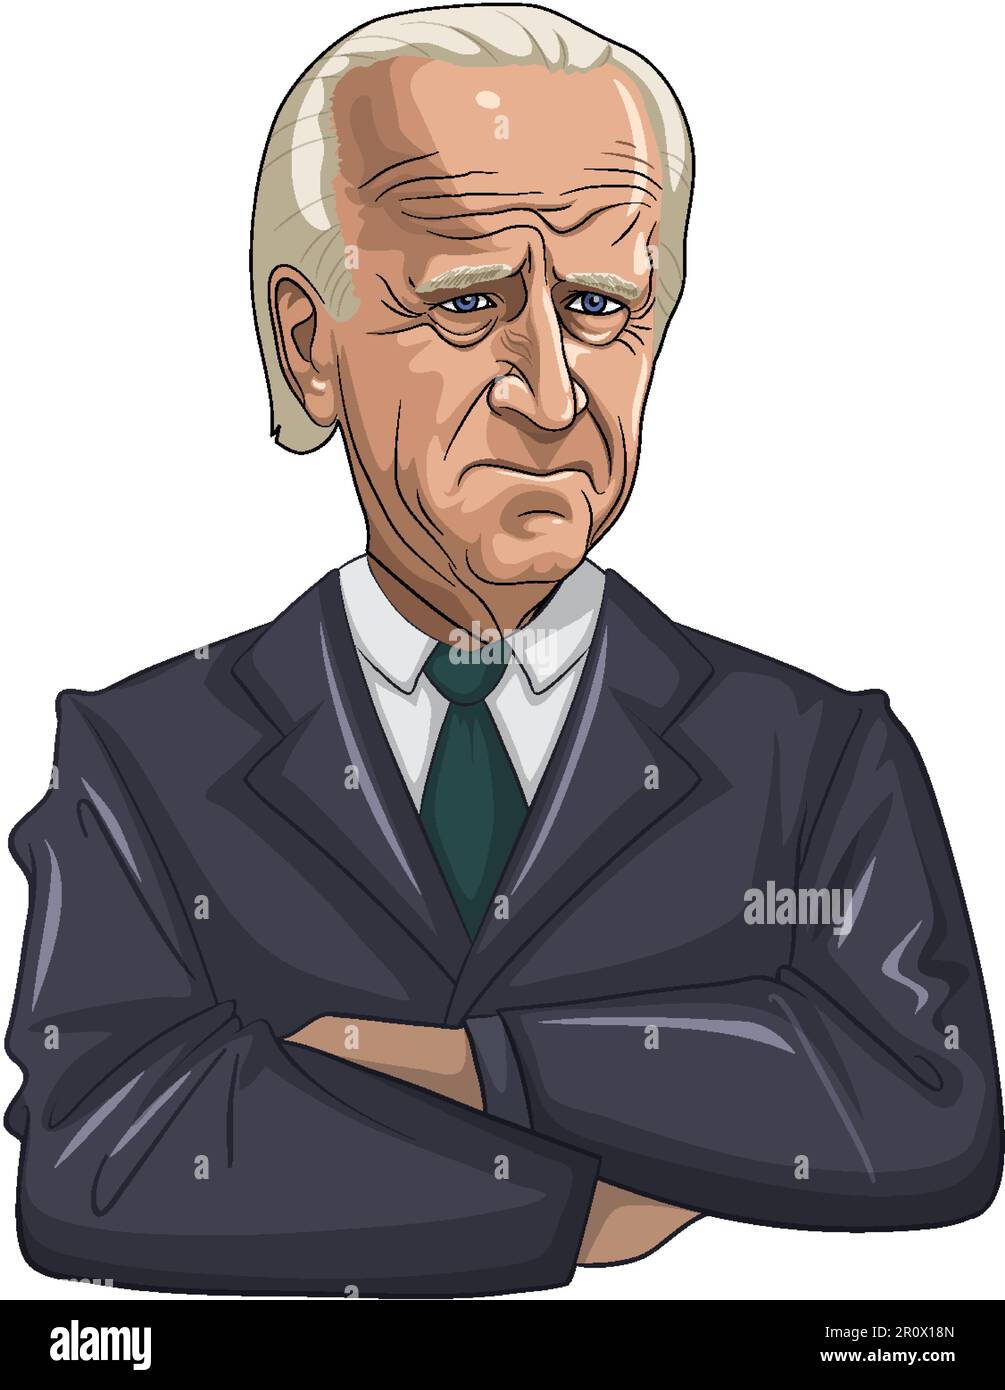 Joe Biden in Formal Attire illustration Stock Vector